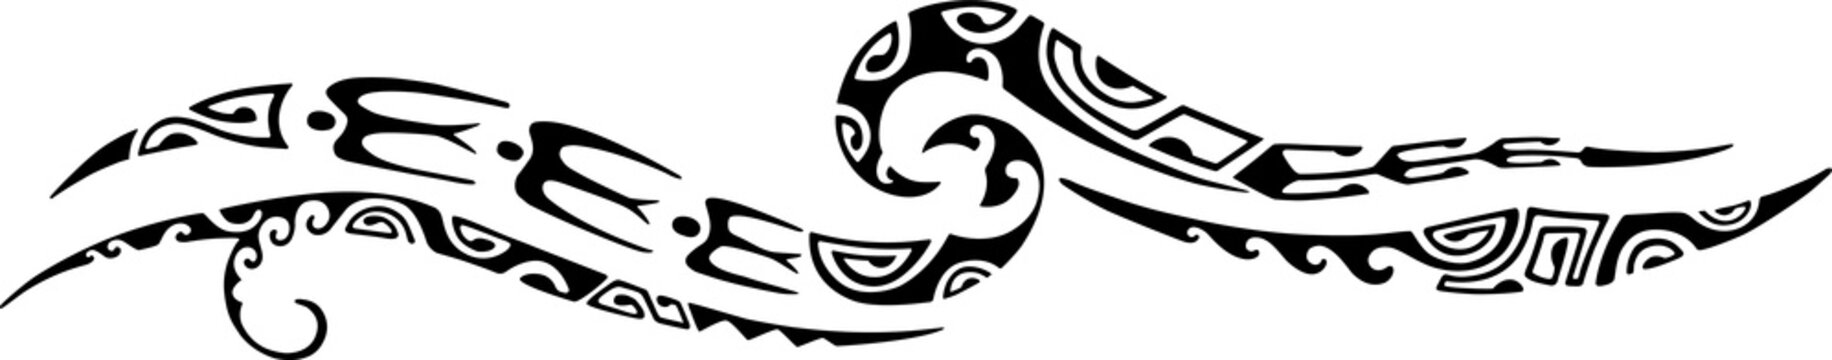 Tattoo Maori design. Ethnic decorative oriental ornament. Art tribal tattoo. Vector sketch of a tattoo Maori.